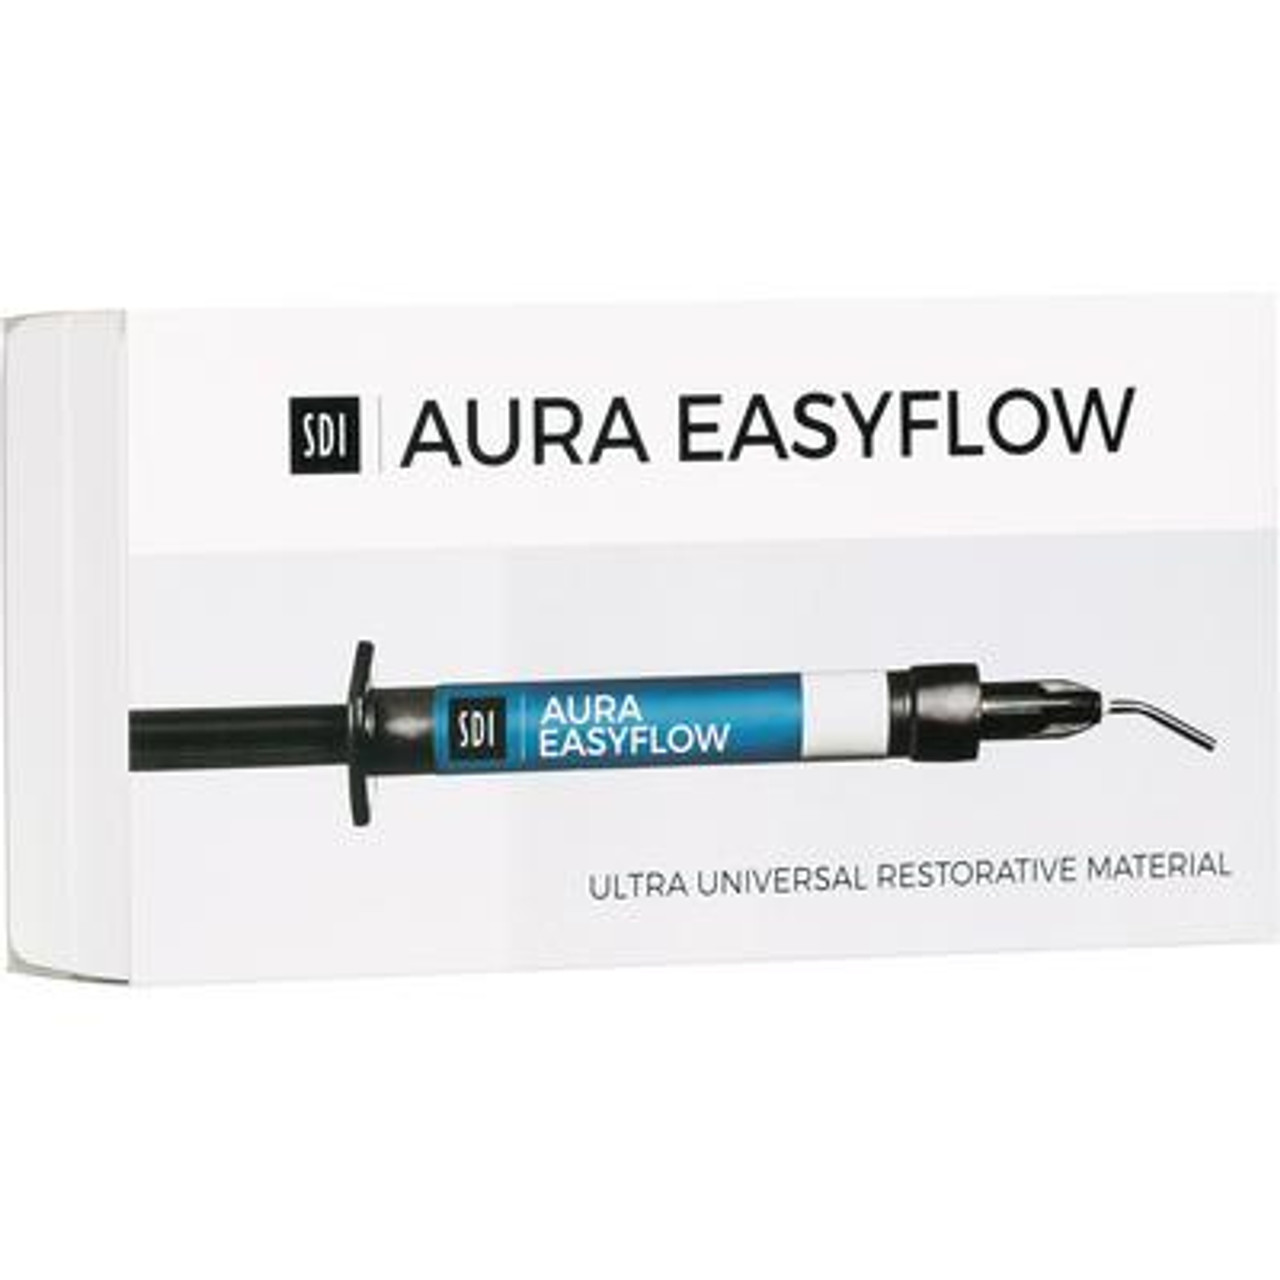 SDI Aura Easyflow, EasyFlow Intro Kit 8566000